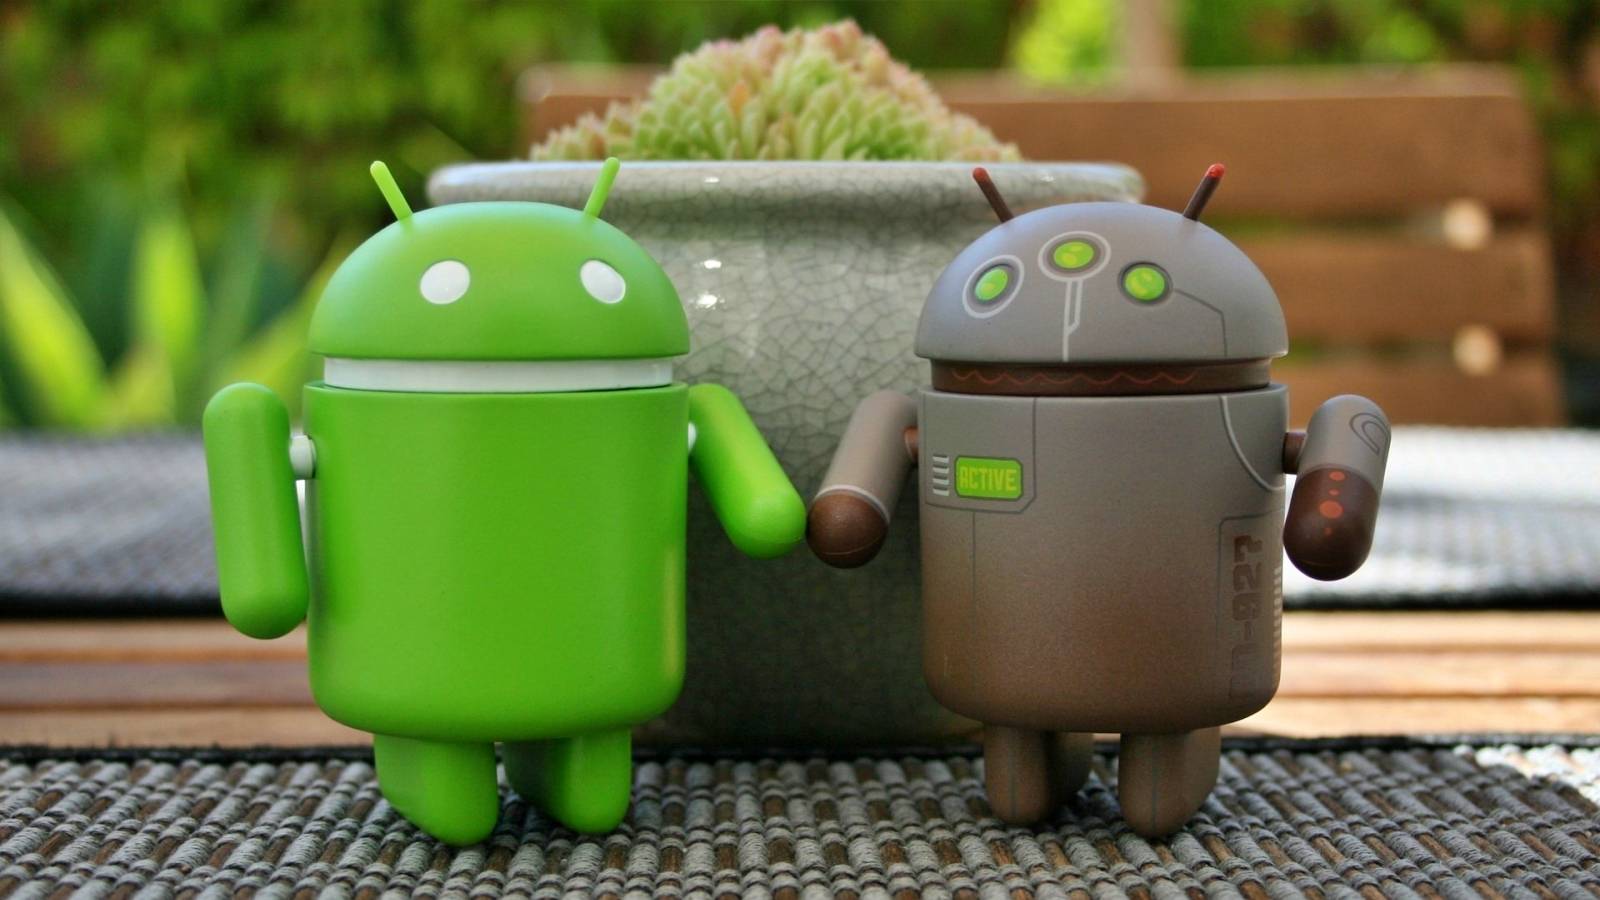 Android Nytt allvarligt HOT som upptäckts sätter många världar i fara